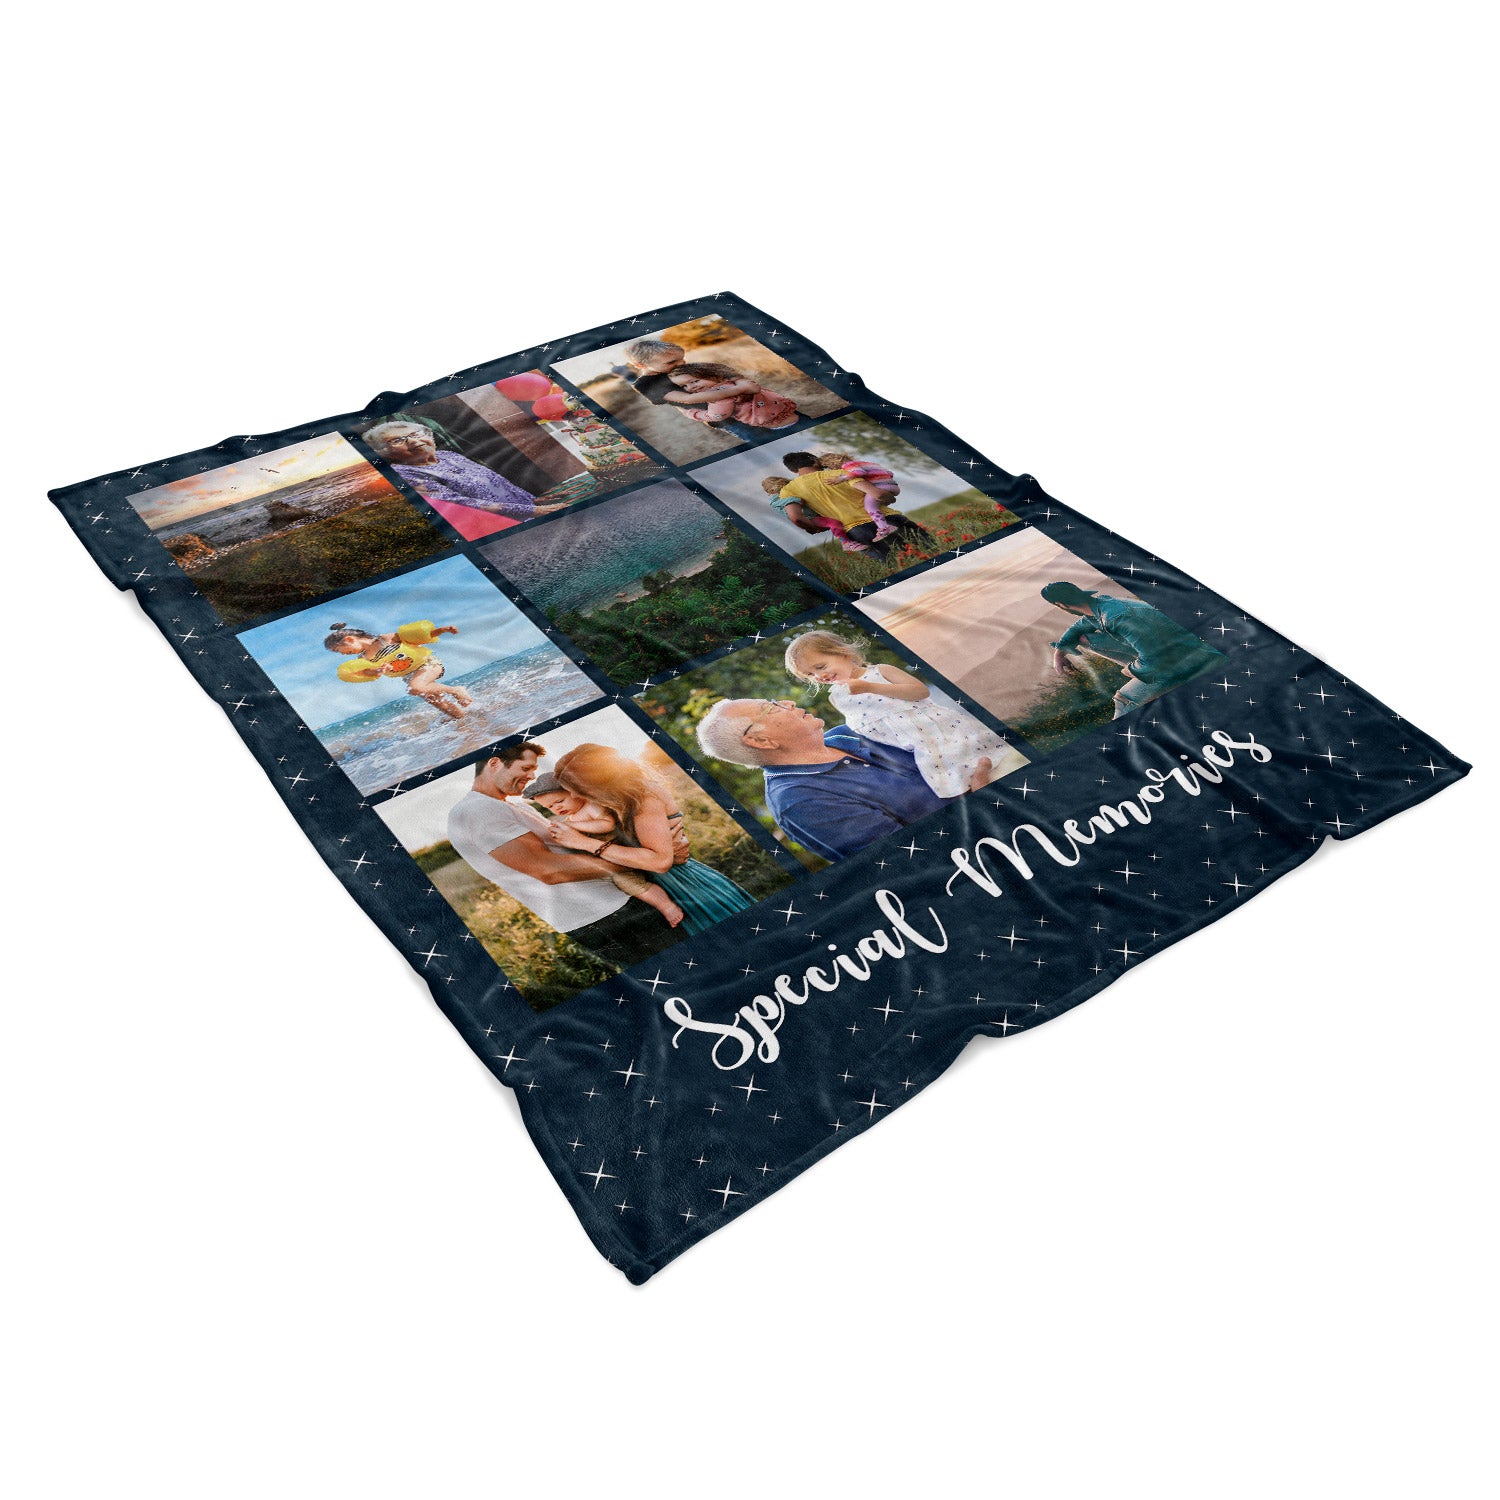 Special Memories Personalised Blanket